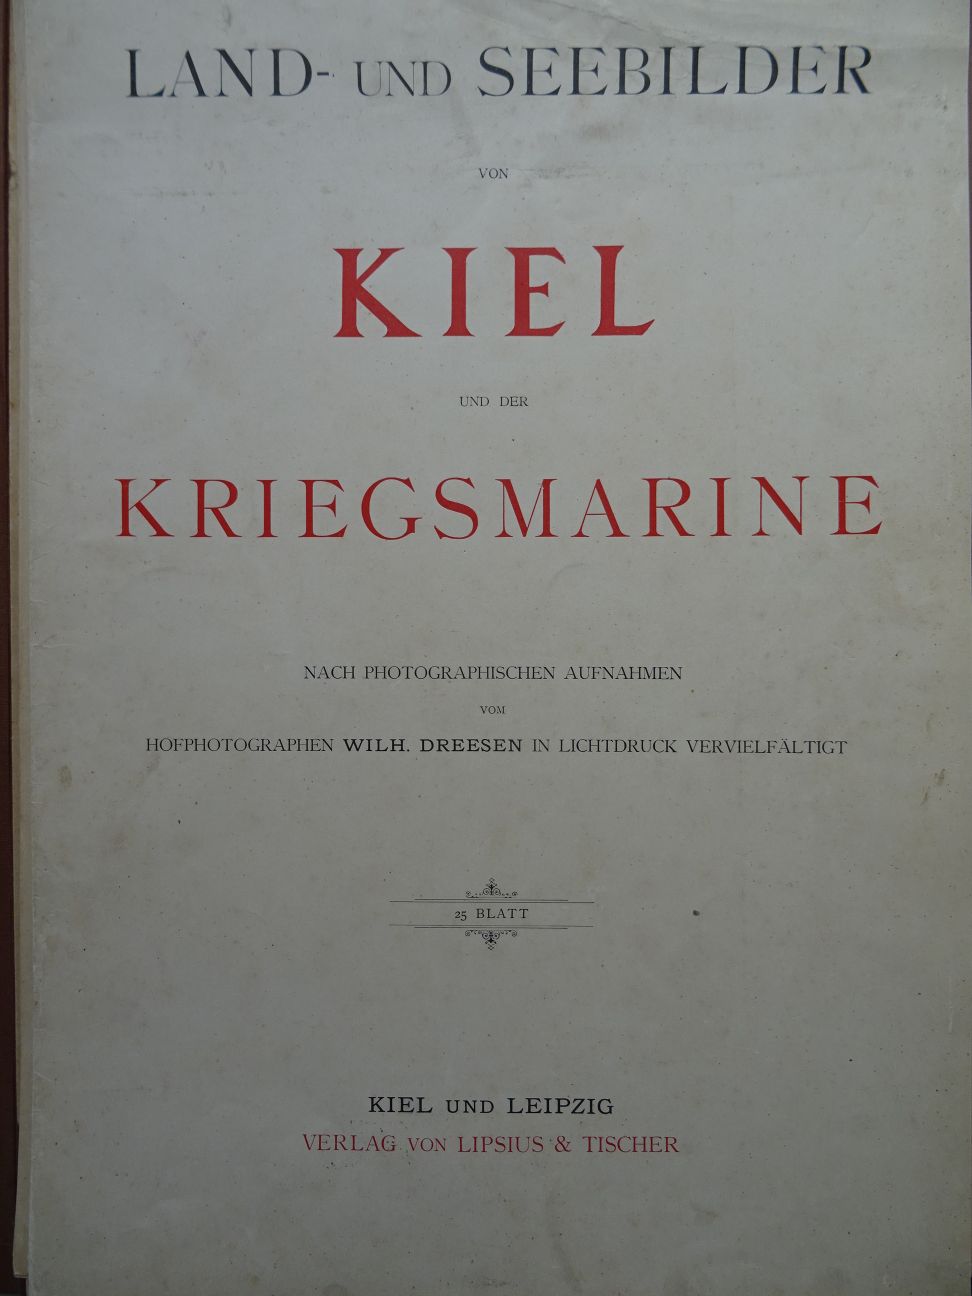 Dreesen - Kiel Kriegsmarine - Image 2 of 6